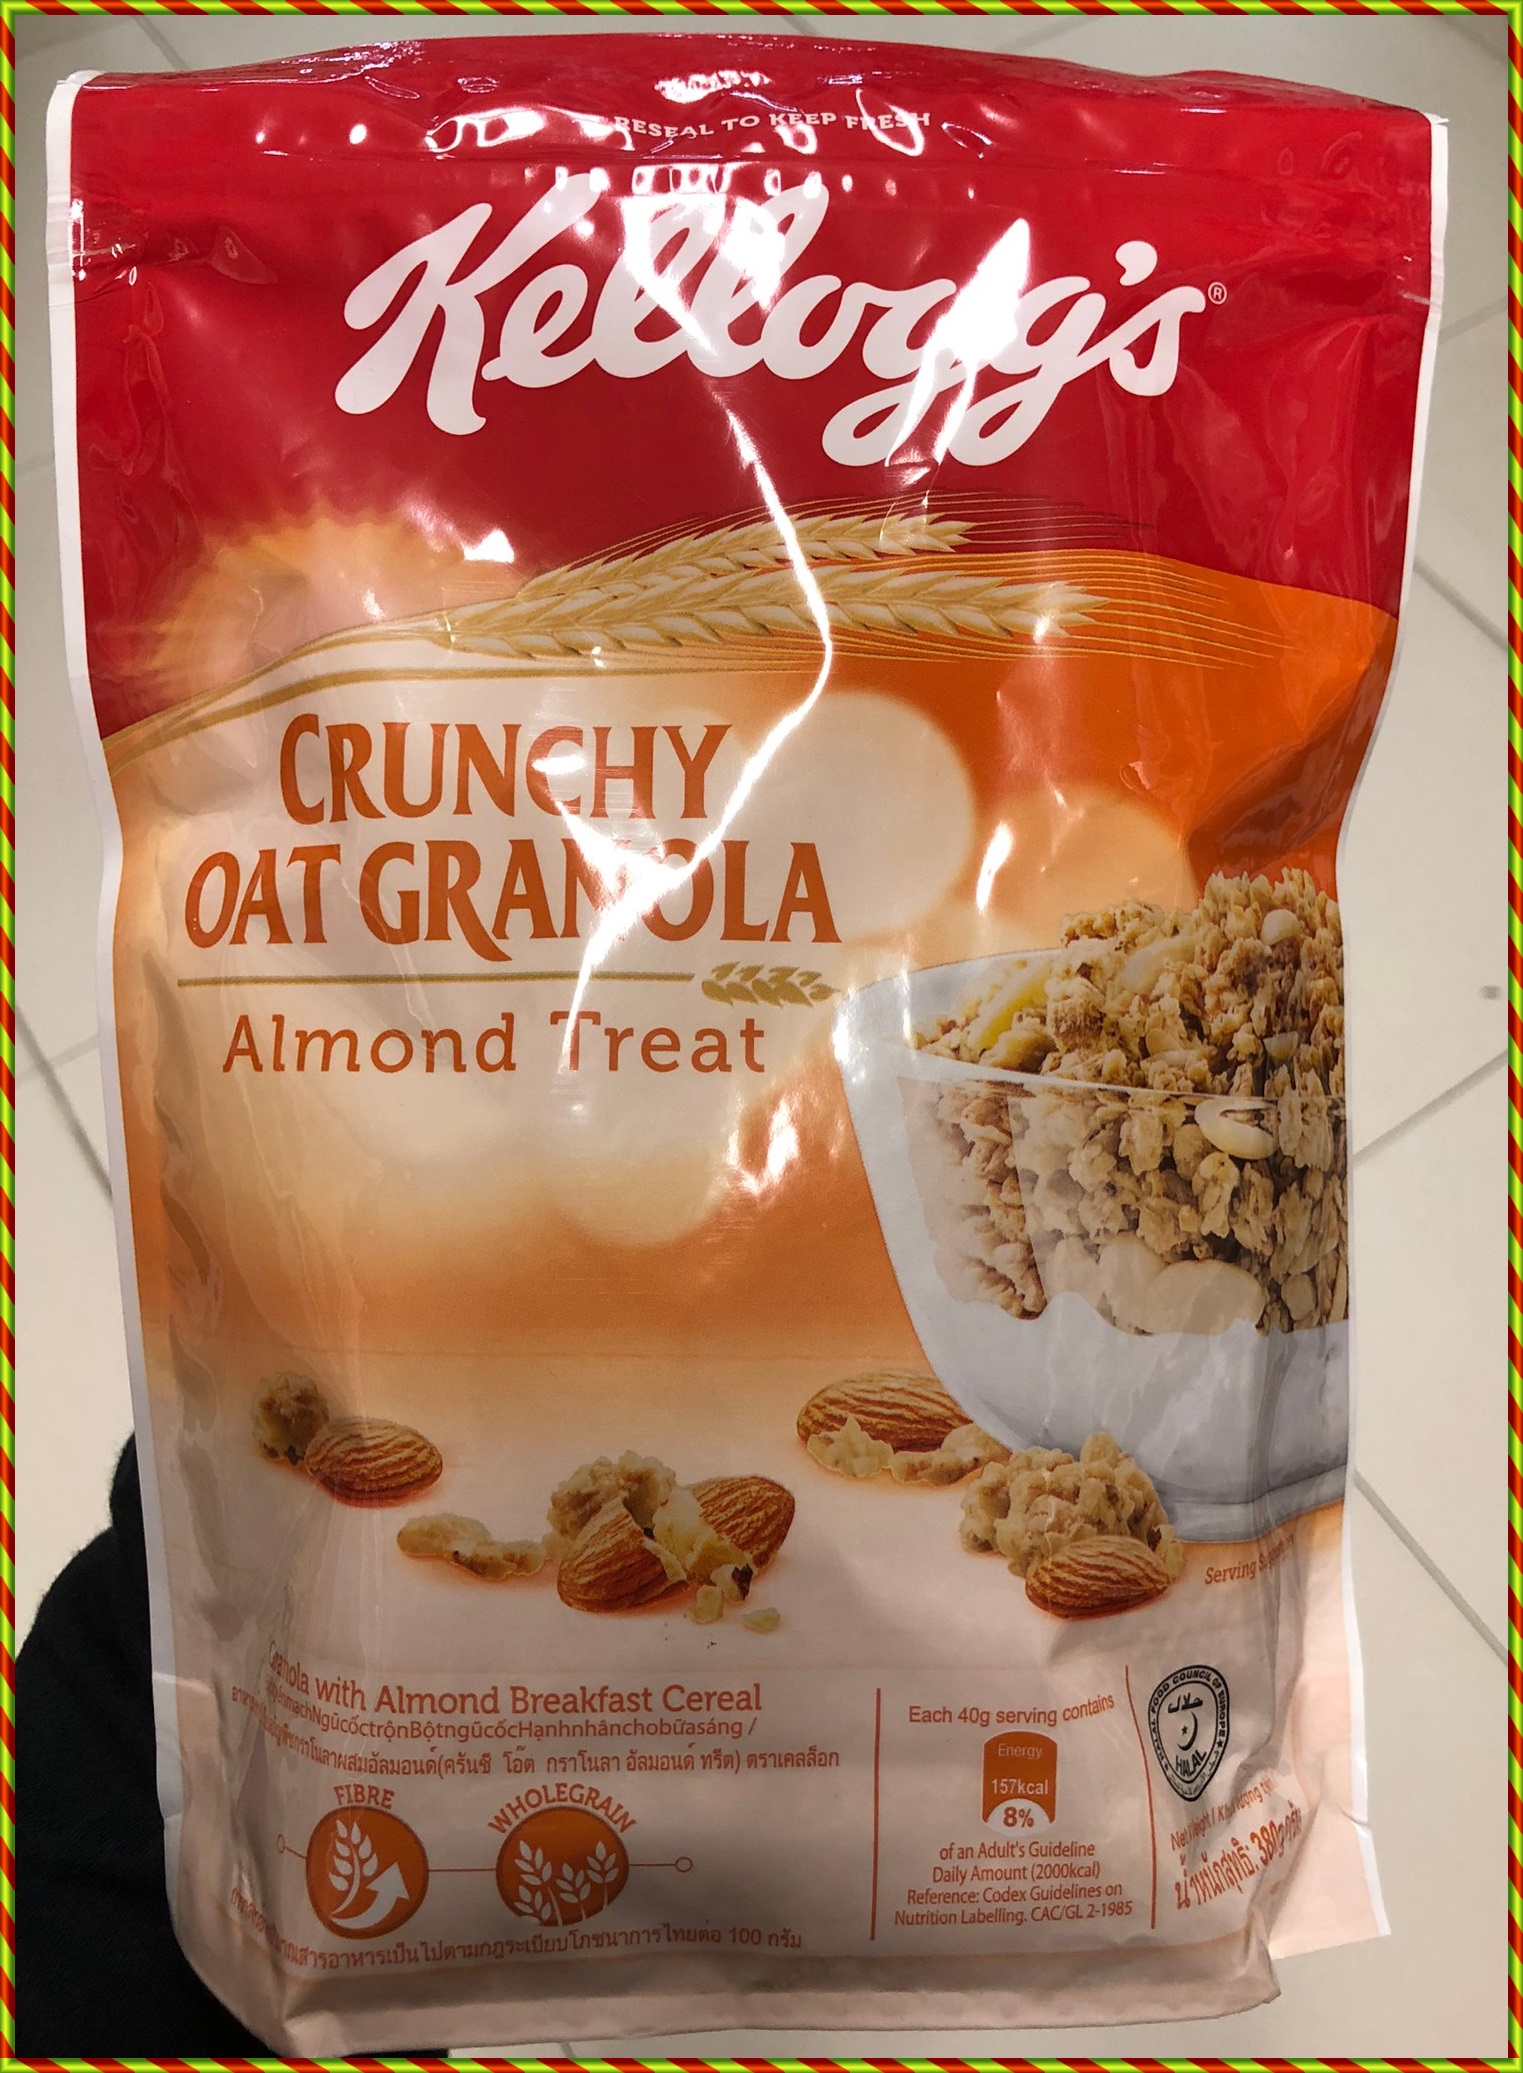 Kellogg's Crunchy Oat Granola Almond Treat (Breakfast Cereal) 380g. เคลล็อกส์ซีเรียลธัญพืชกราโนล่าผสมผลอัลมอนด์ 380กรัม